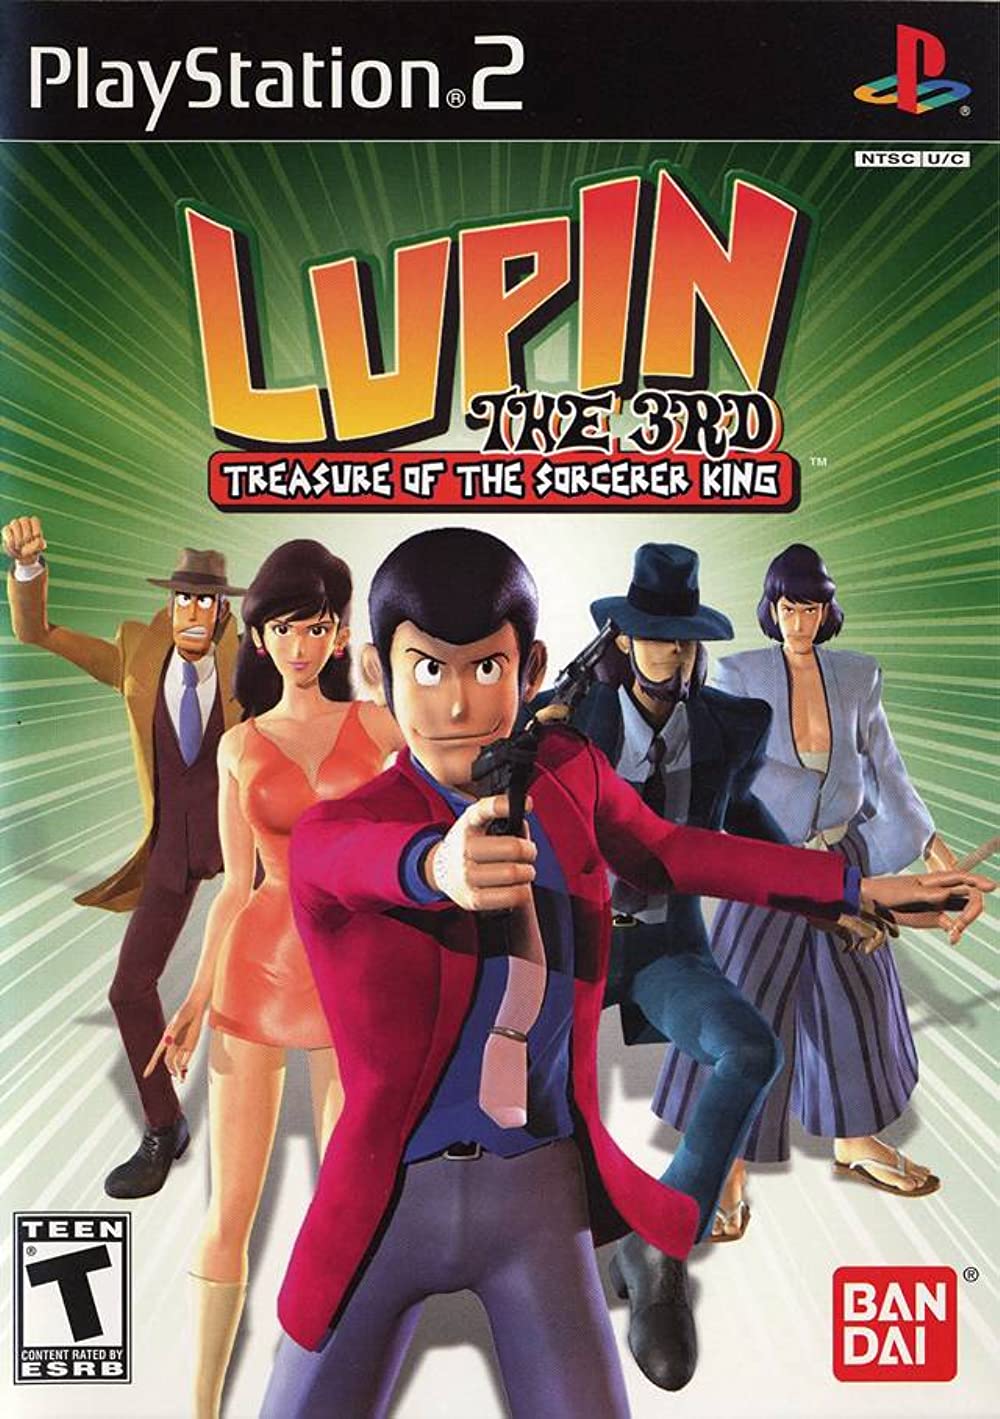 « آرسن لوپن» Lupin the 3rd: Treasure of the Sorcerer King